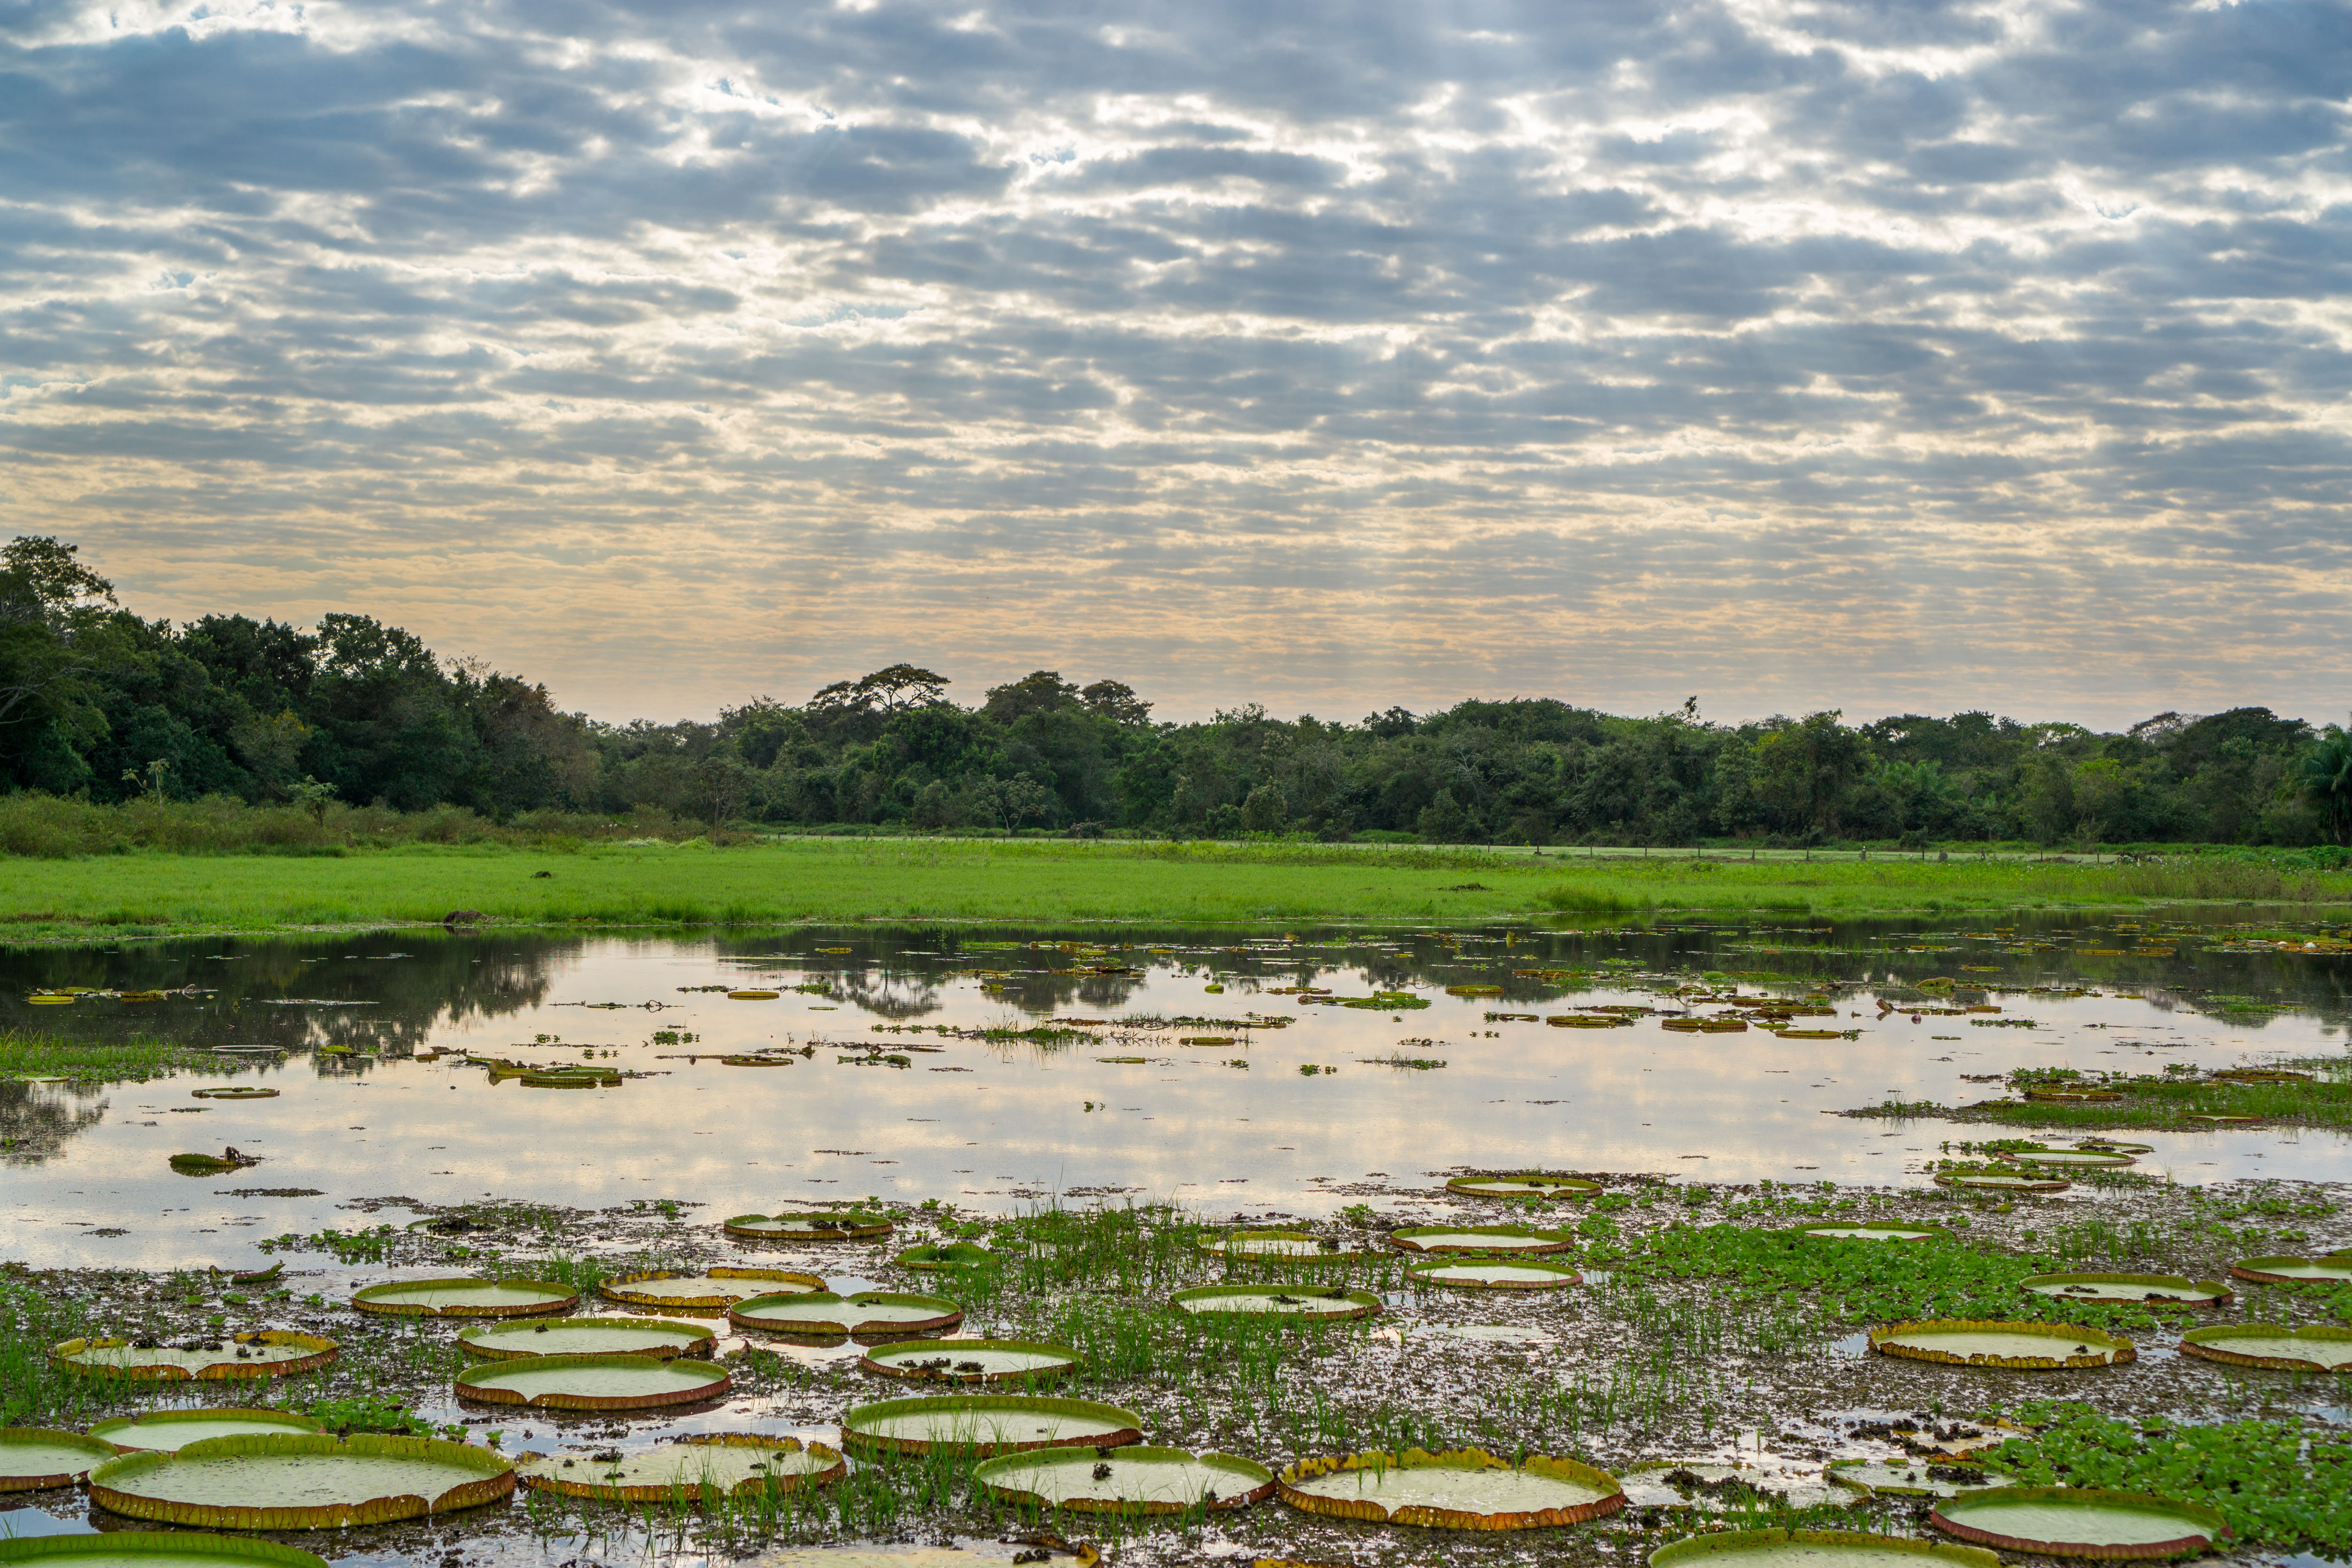 Uma paisagem exuberante de encher os olhos de turistas de todos os cantos do mundo. Assim é a paisagem do brasileiríssimo Pantanal / GB Imagem